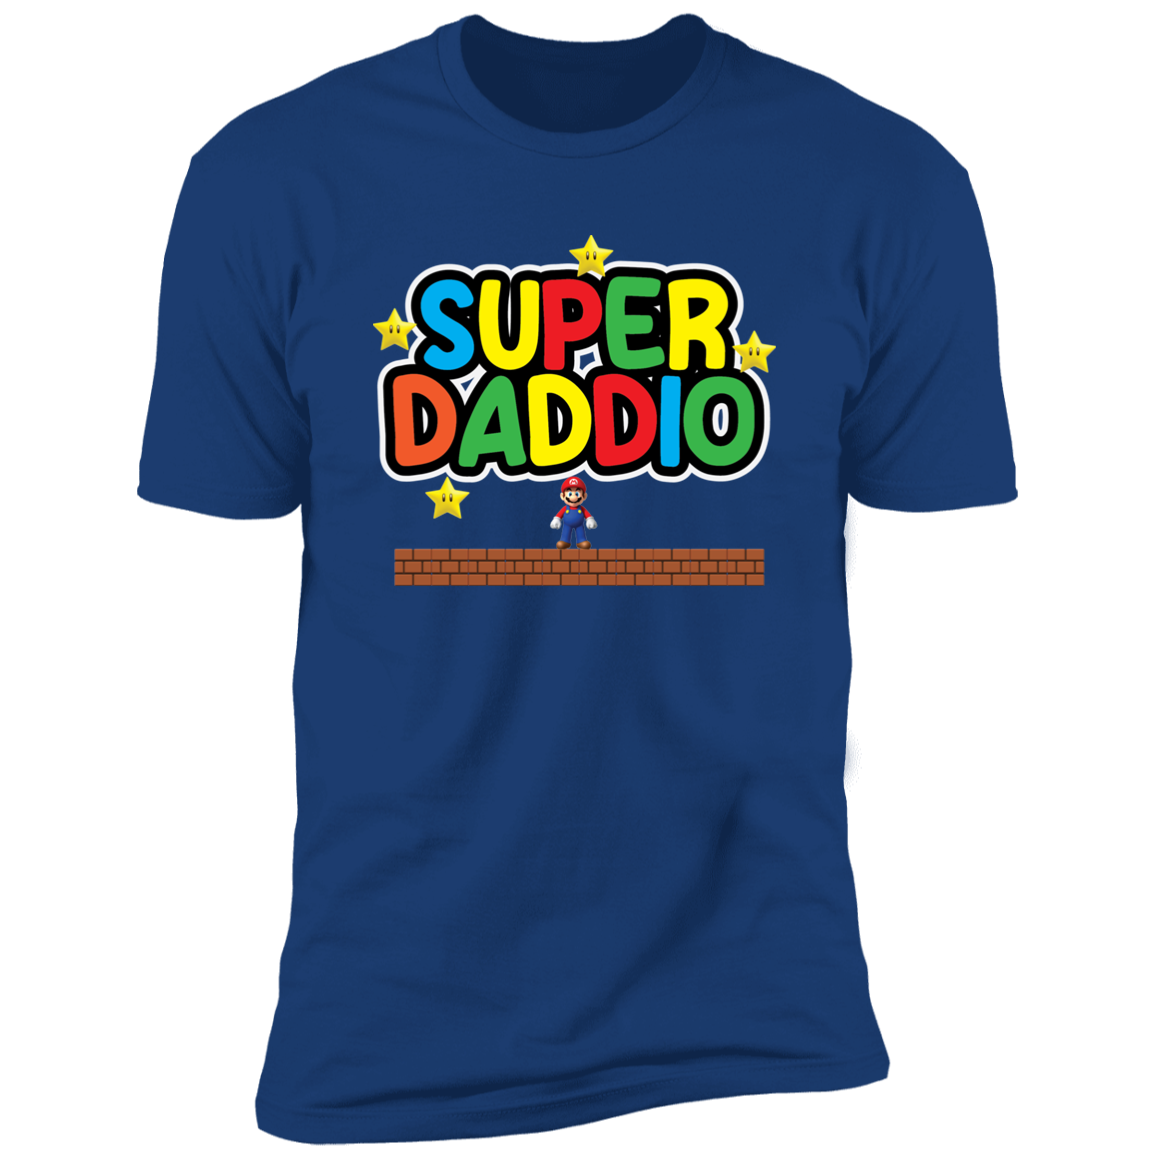 Super Daddio T-Shirt